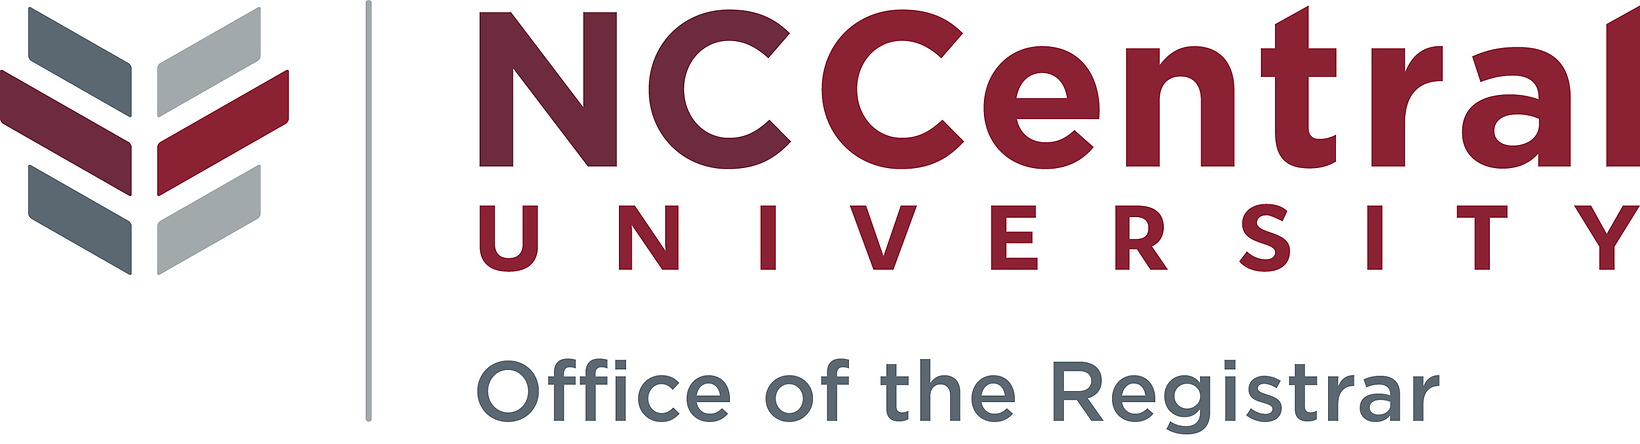 University Registrars Office Logo